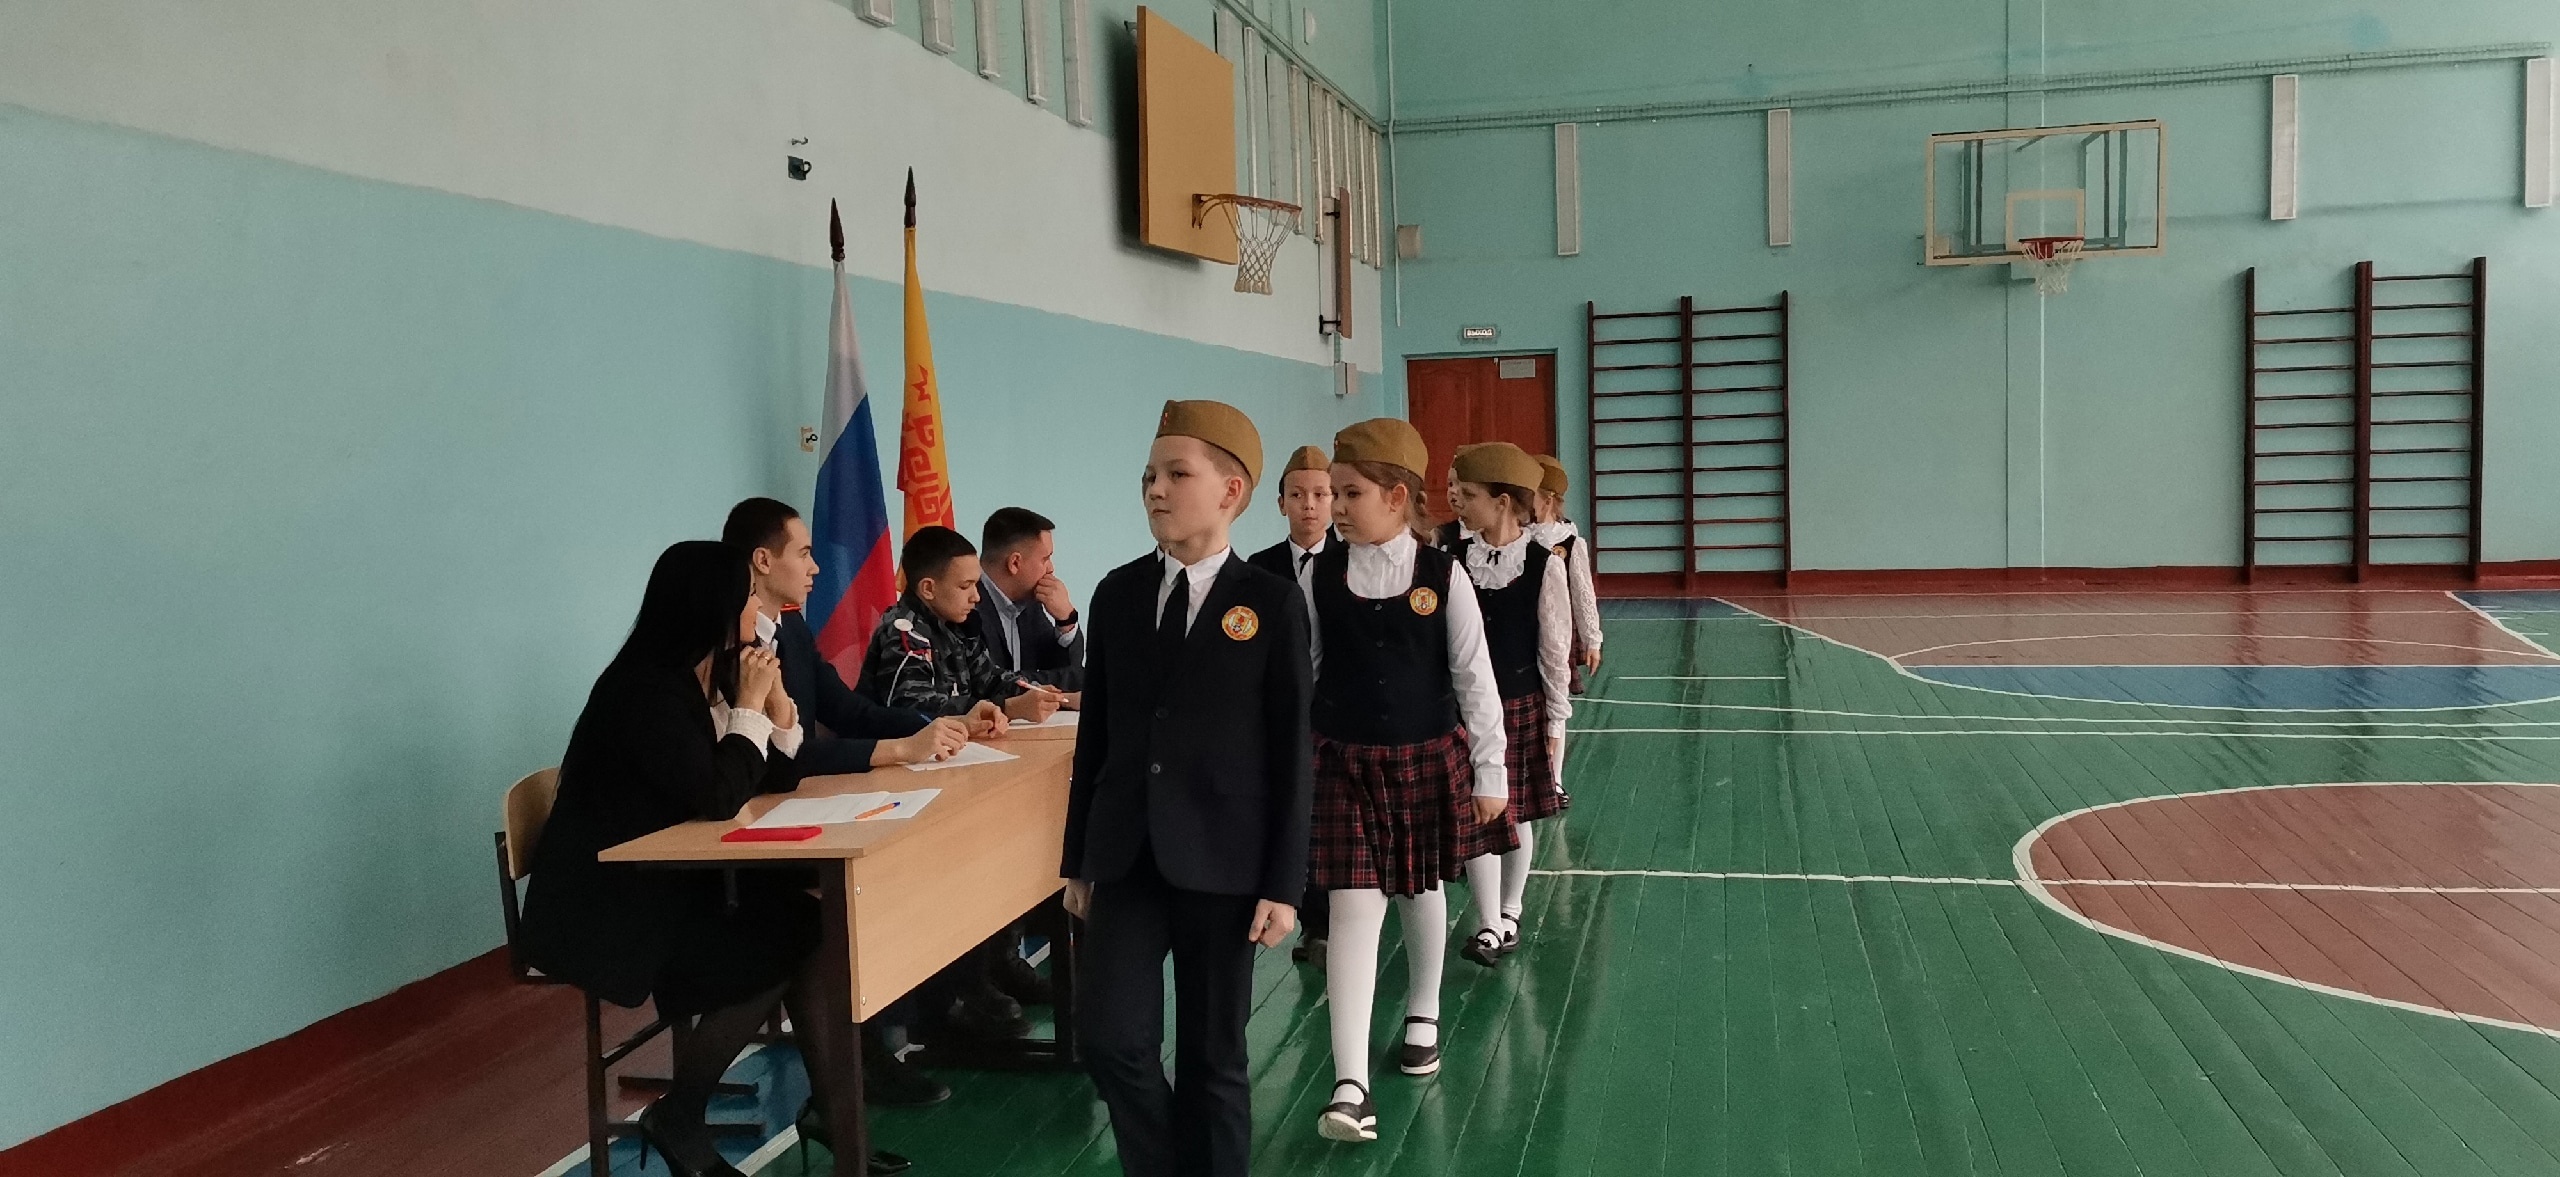 Школа 40 севастополь